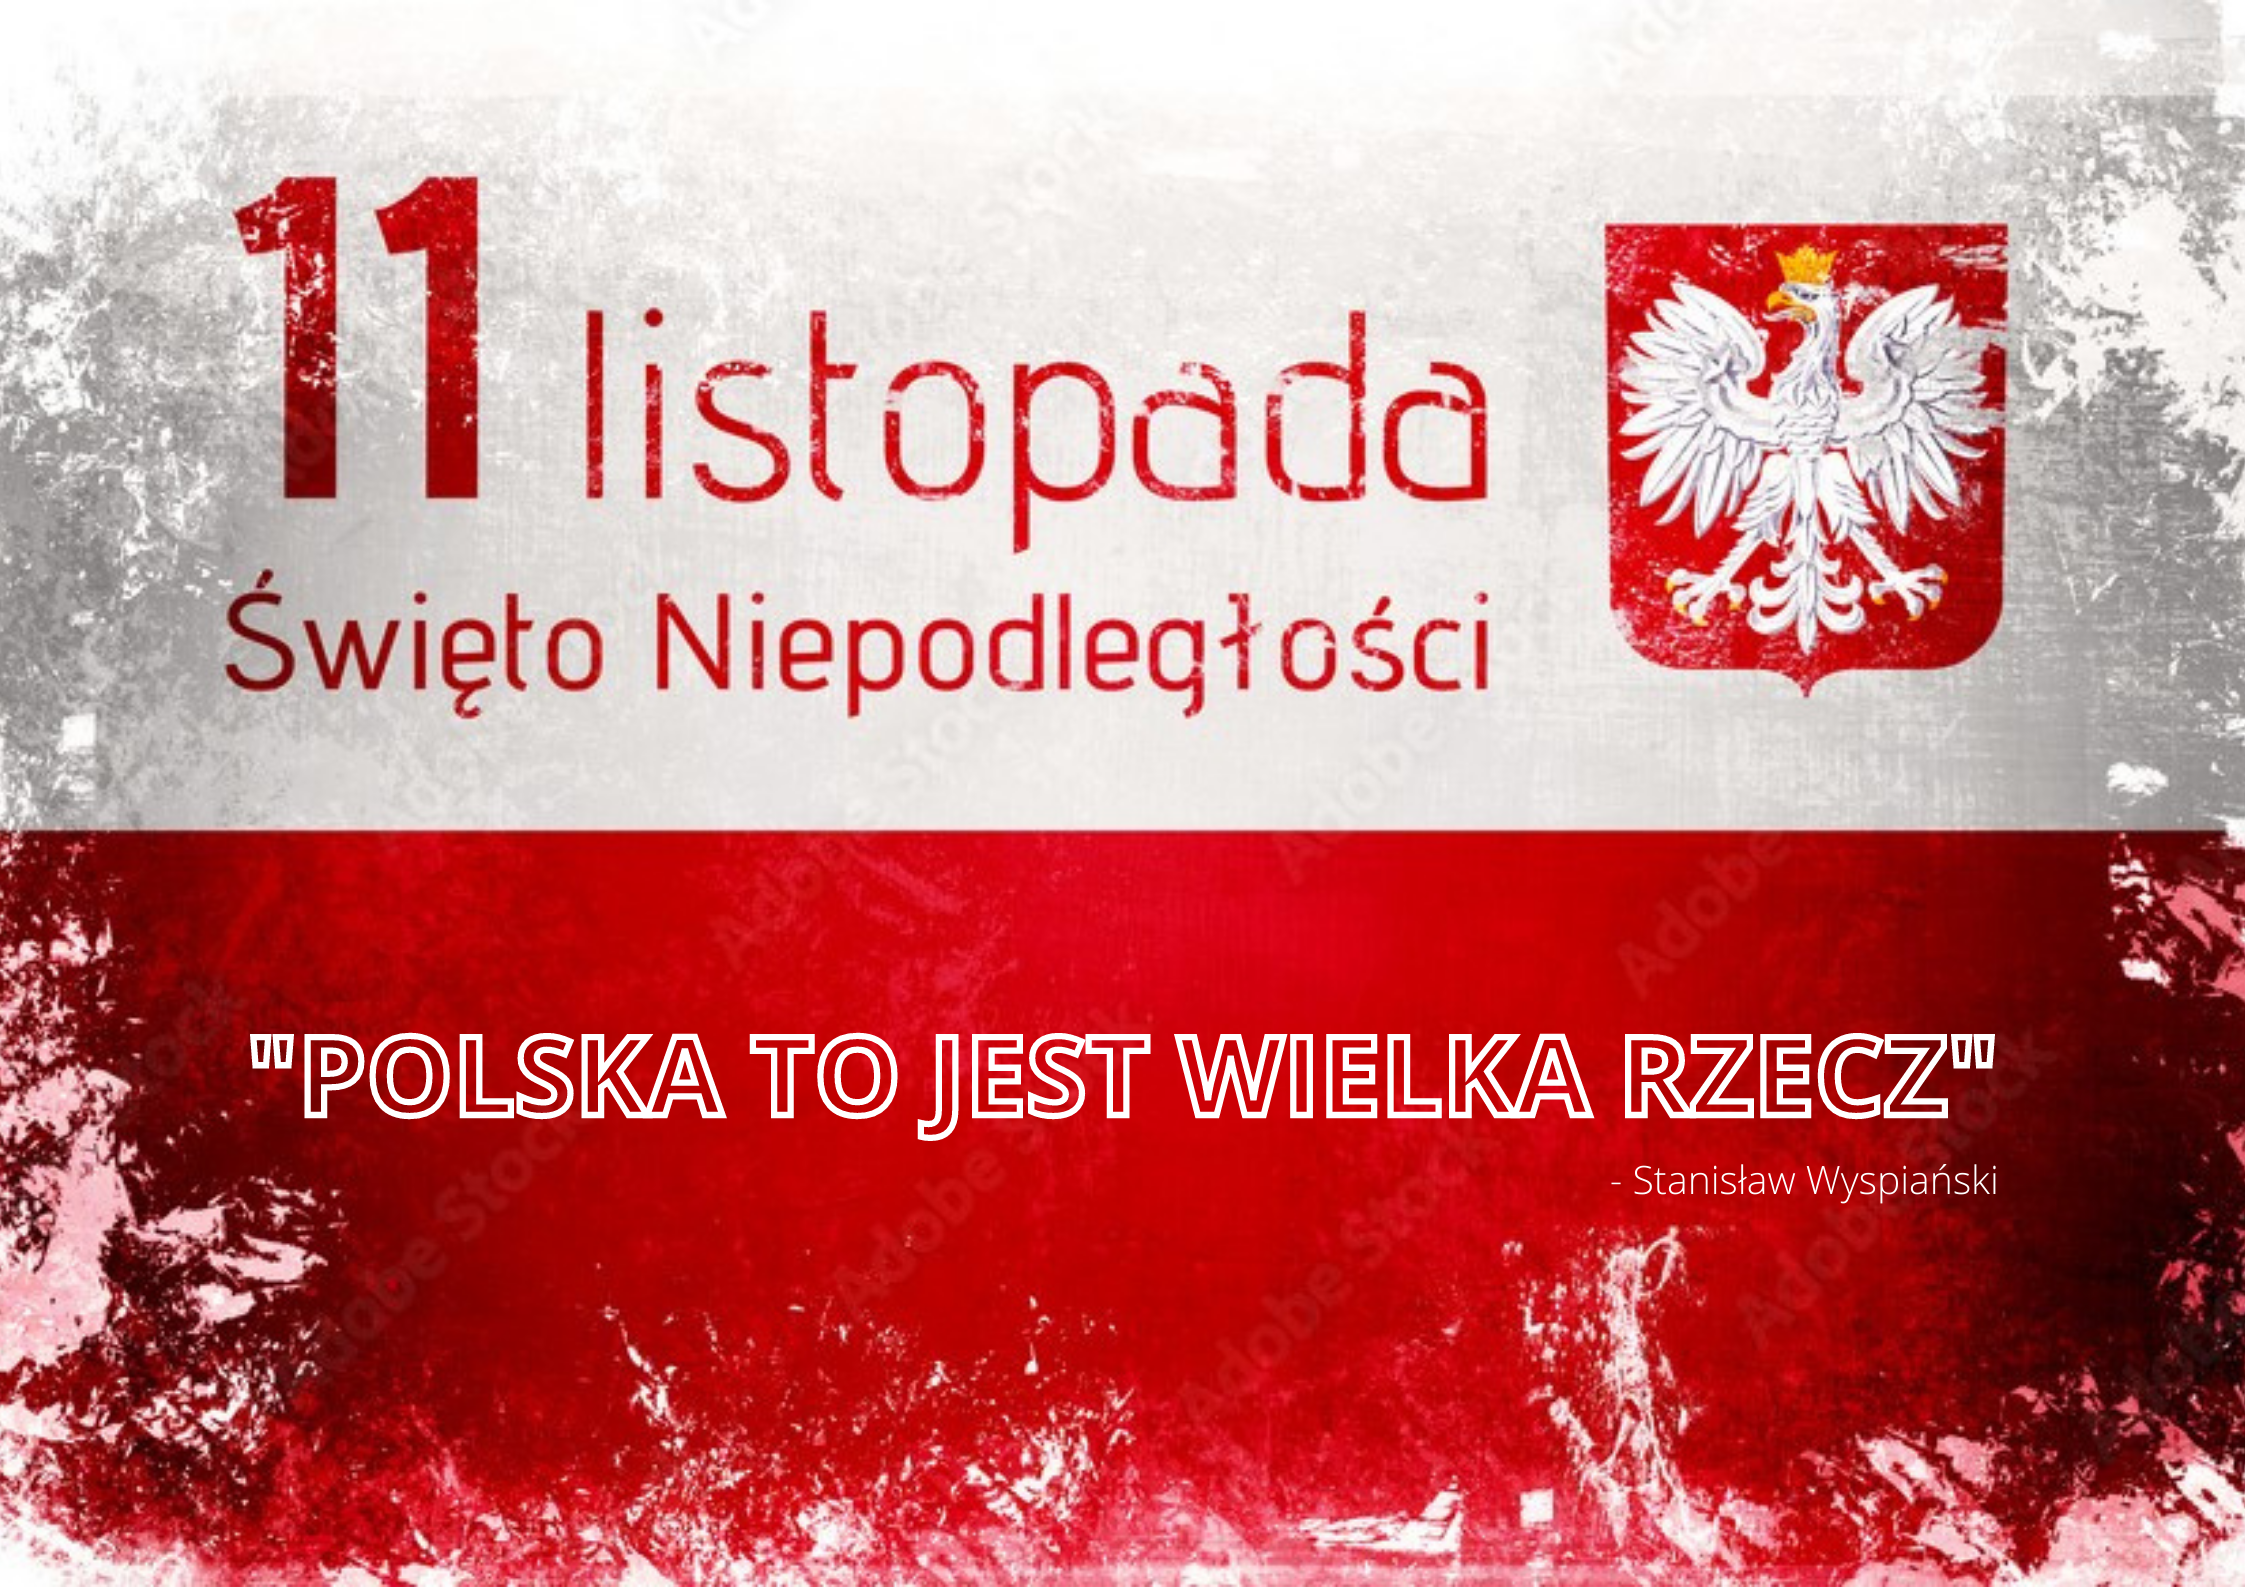 11 Listopada Święto Niepodległości; Polska to jest wielka rzecz; Stanisław Wyspianski